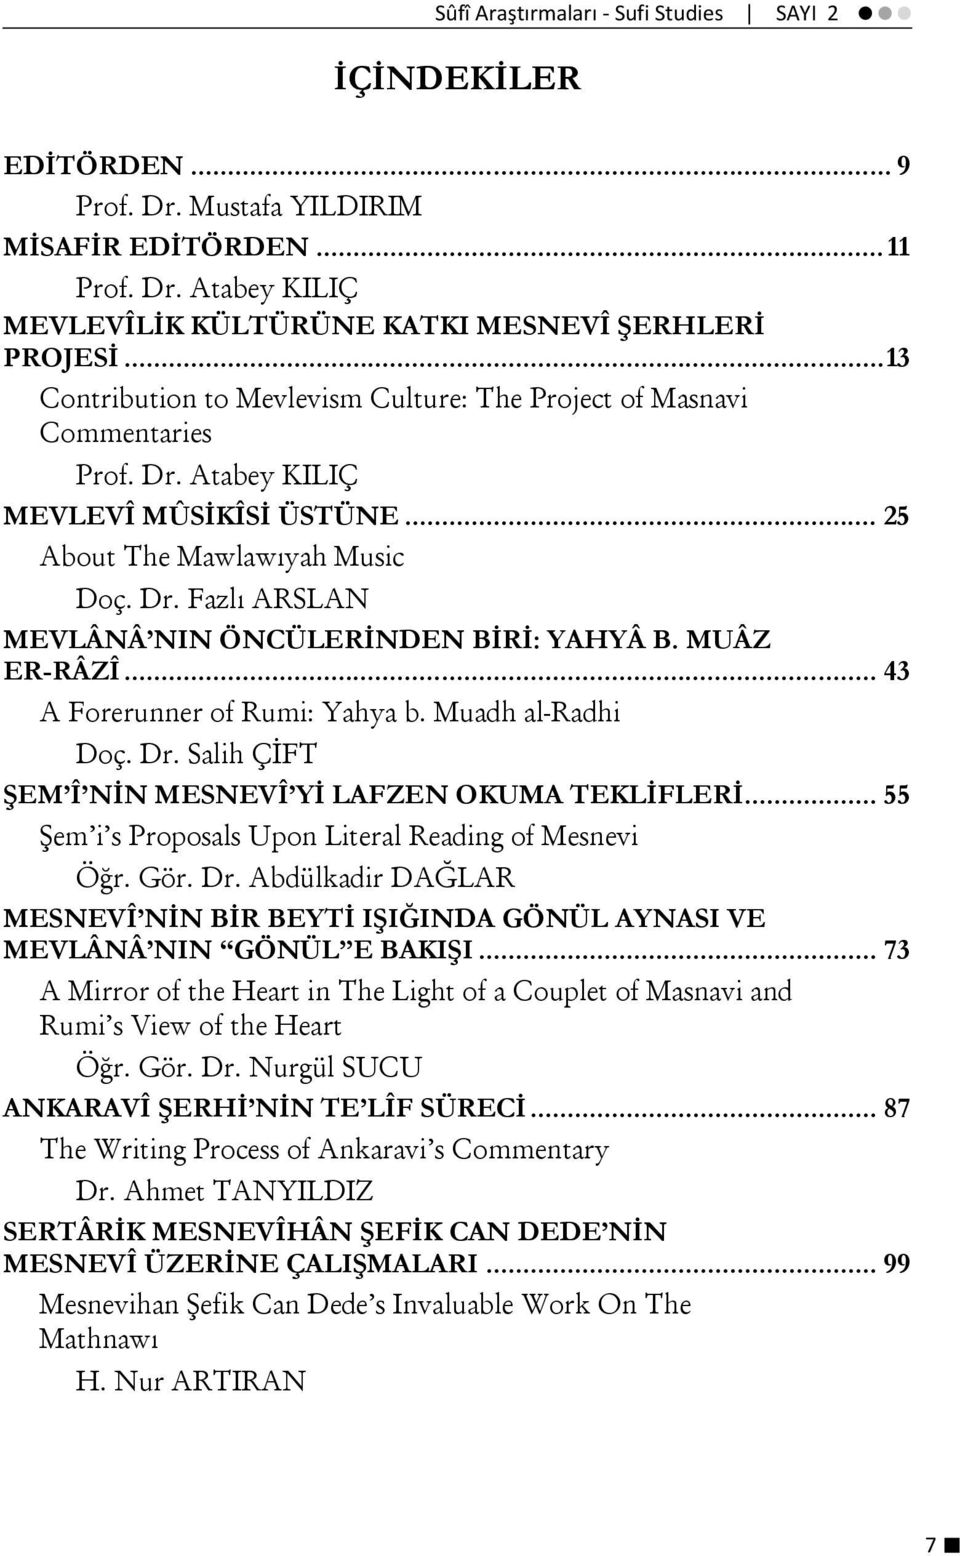 MUÂZ ER-RÂZÎ... 43 A Forerunner of Rumi: Yahya b. Muadh al-radhi Doç. Dr. Salih ÇİFT ŞEM Î NİN MESNEVÎ Yİ LAFZEN OKUMA TEKLİFLERİ... 55 Şem i s Proposals Upon Literal Reading of Mesnevi Öğr. Gör. Dr. Abdülkadir DAĞLAR MESNEVÎ NİN BİR BEYTİ IŞIĞINDA GÖNÜL AYNASI VE MEVLÂNÂ NIN GÖNÜL E BAKIŞI.